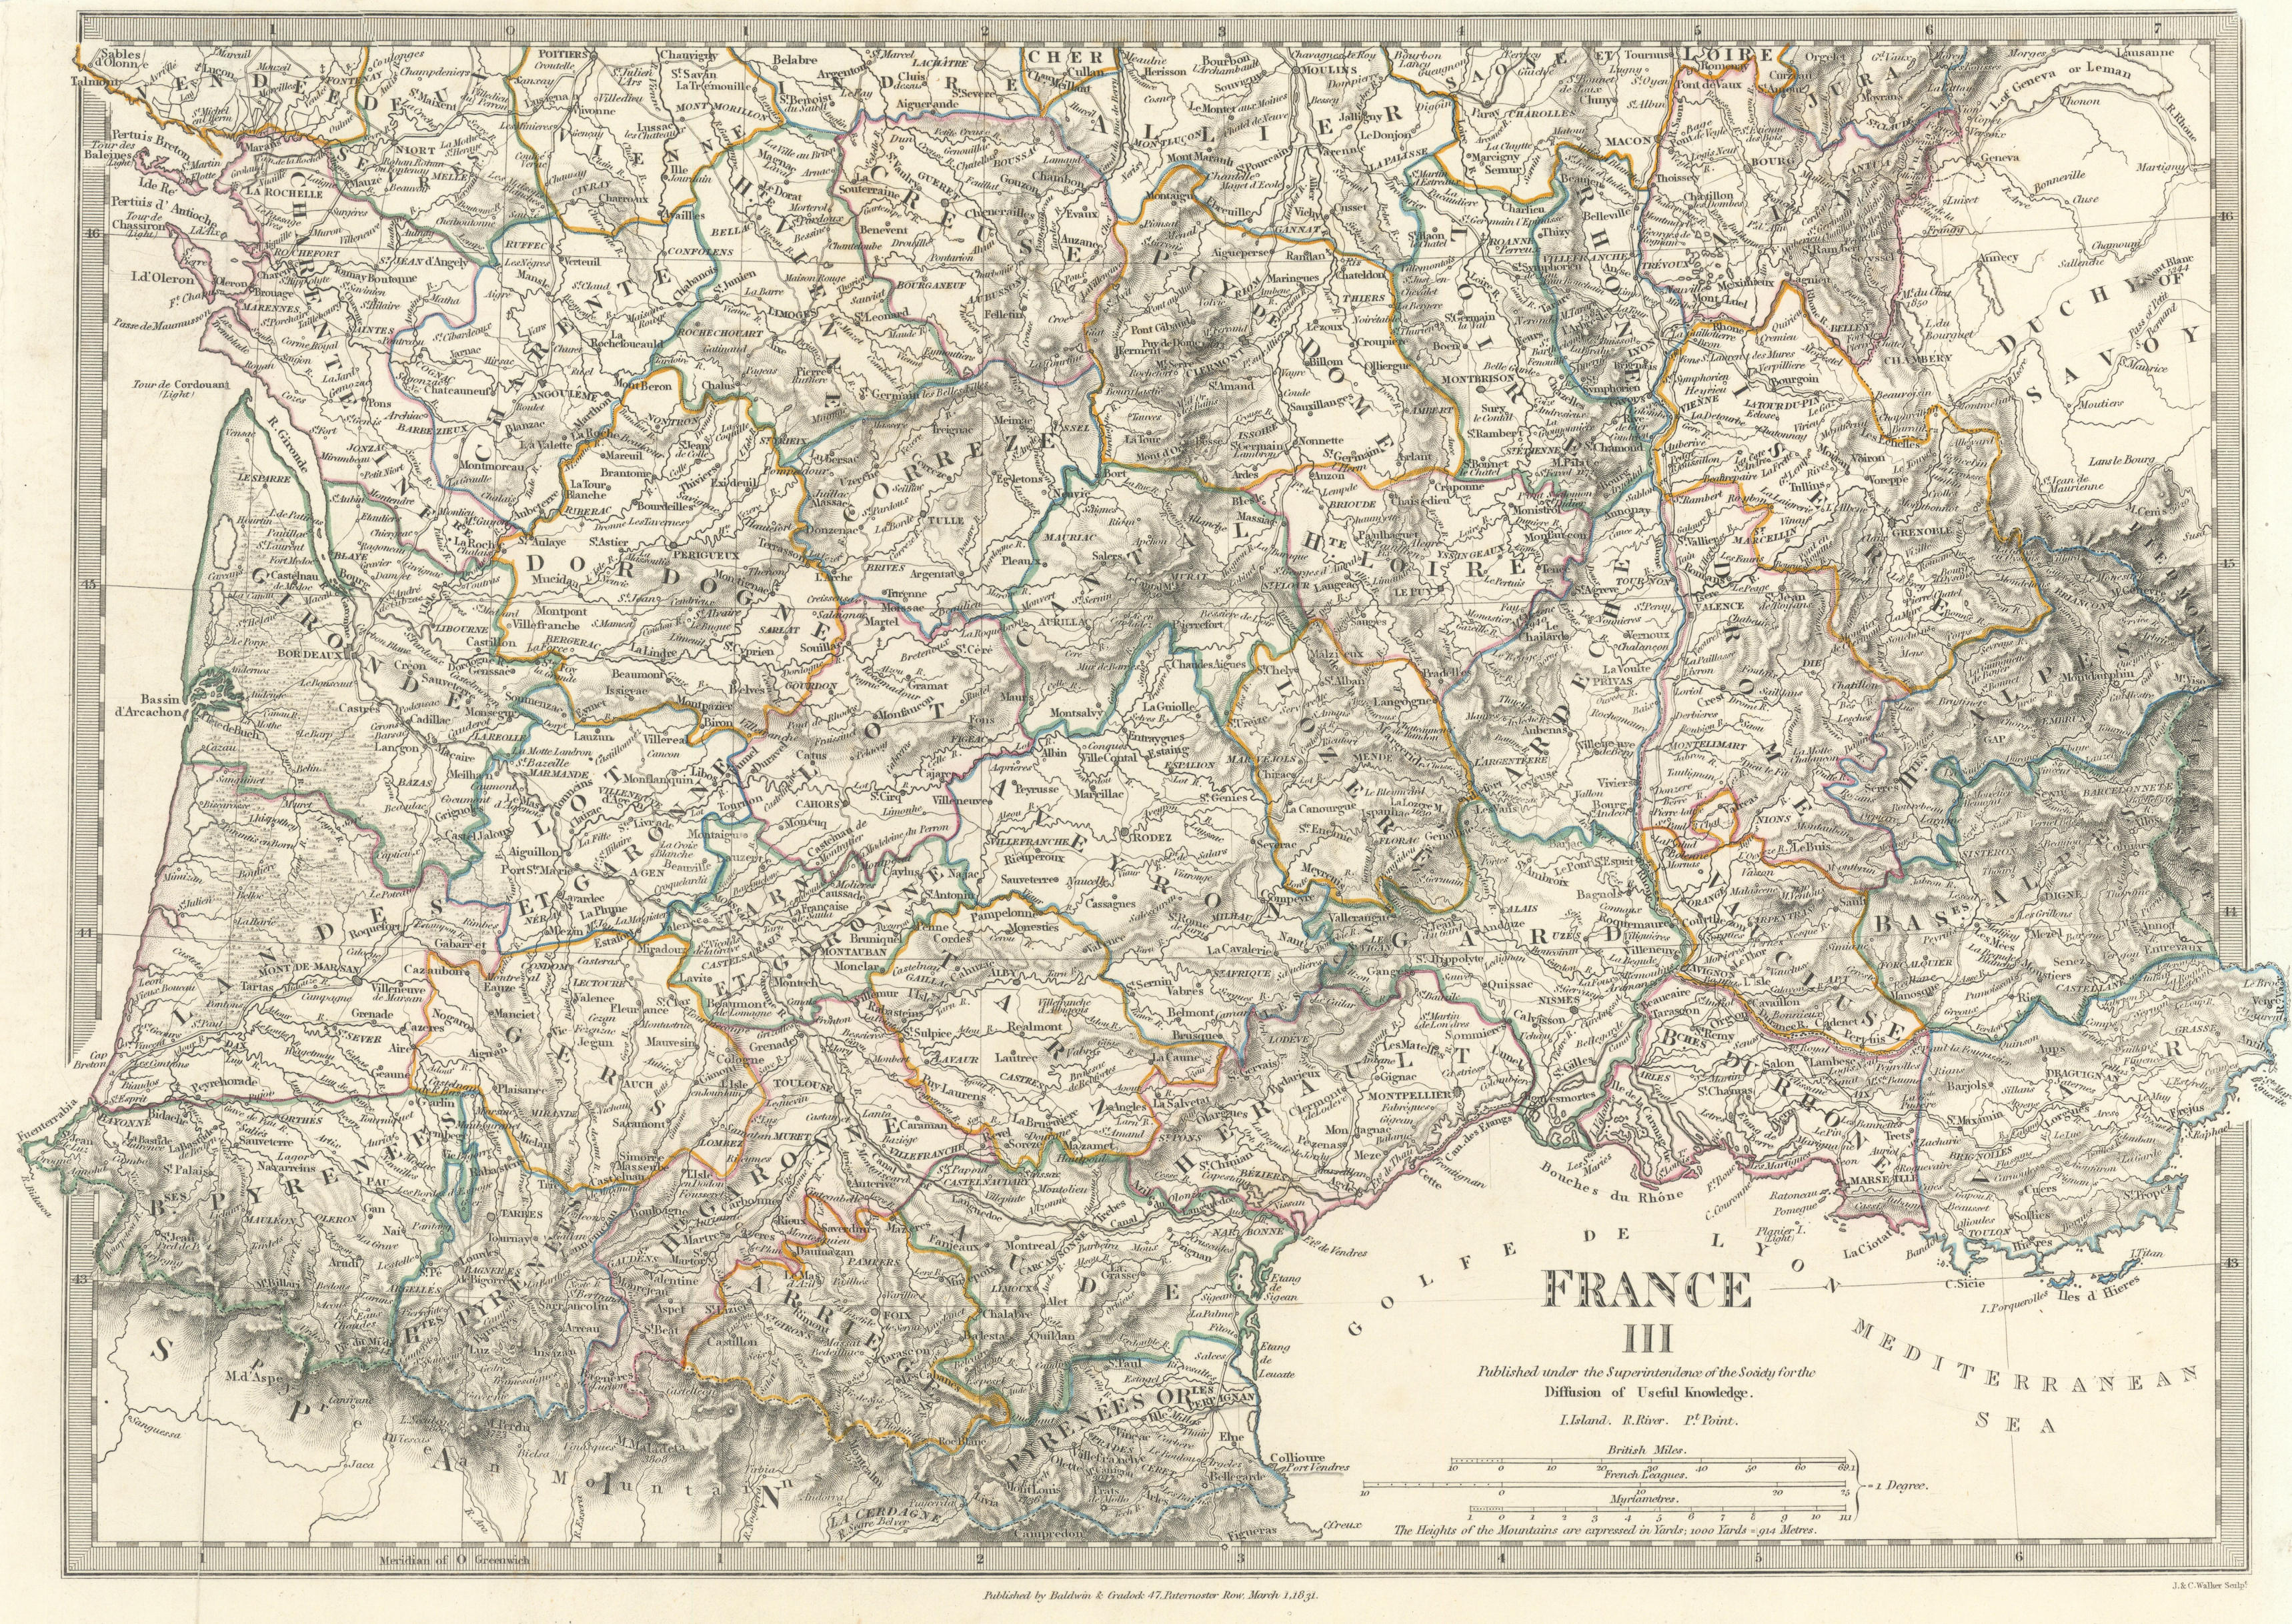 FRANCE STH.Aquitaine Pyrénées Provence Languedoc Rhône Auvergne.SDUK 1844 map